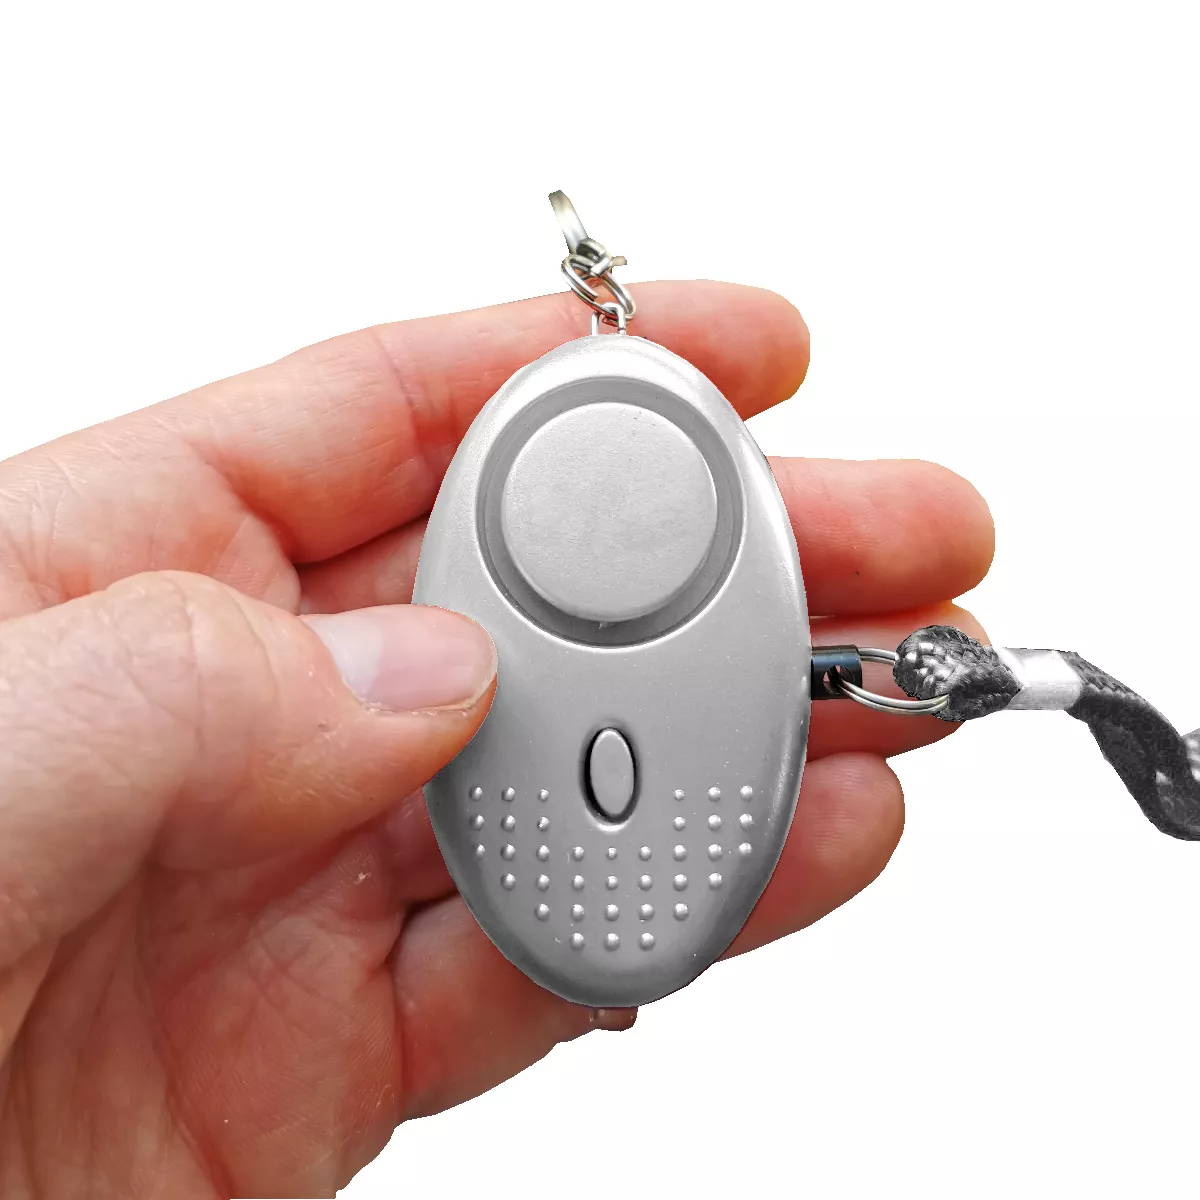 Alarme de poche - Alarme personnelle Safesound 140 dB avec porte-clés pour  lampe de poche, sirène d'autodéfense d'alarme panique pour femmes et